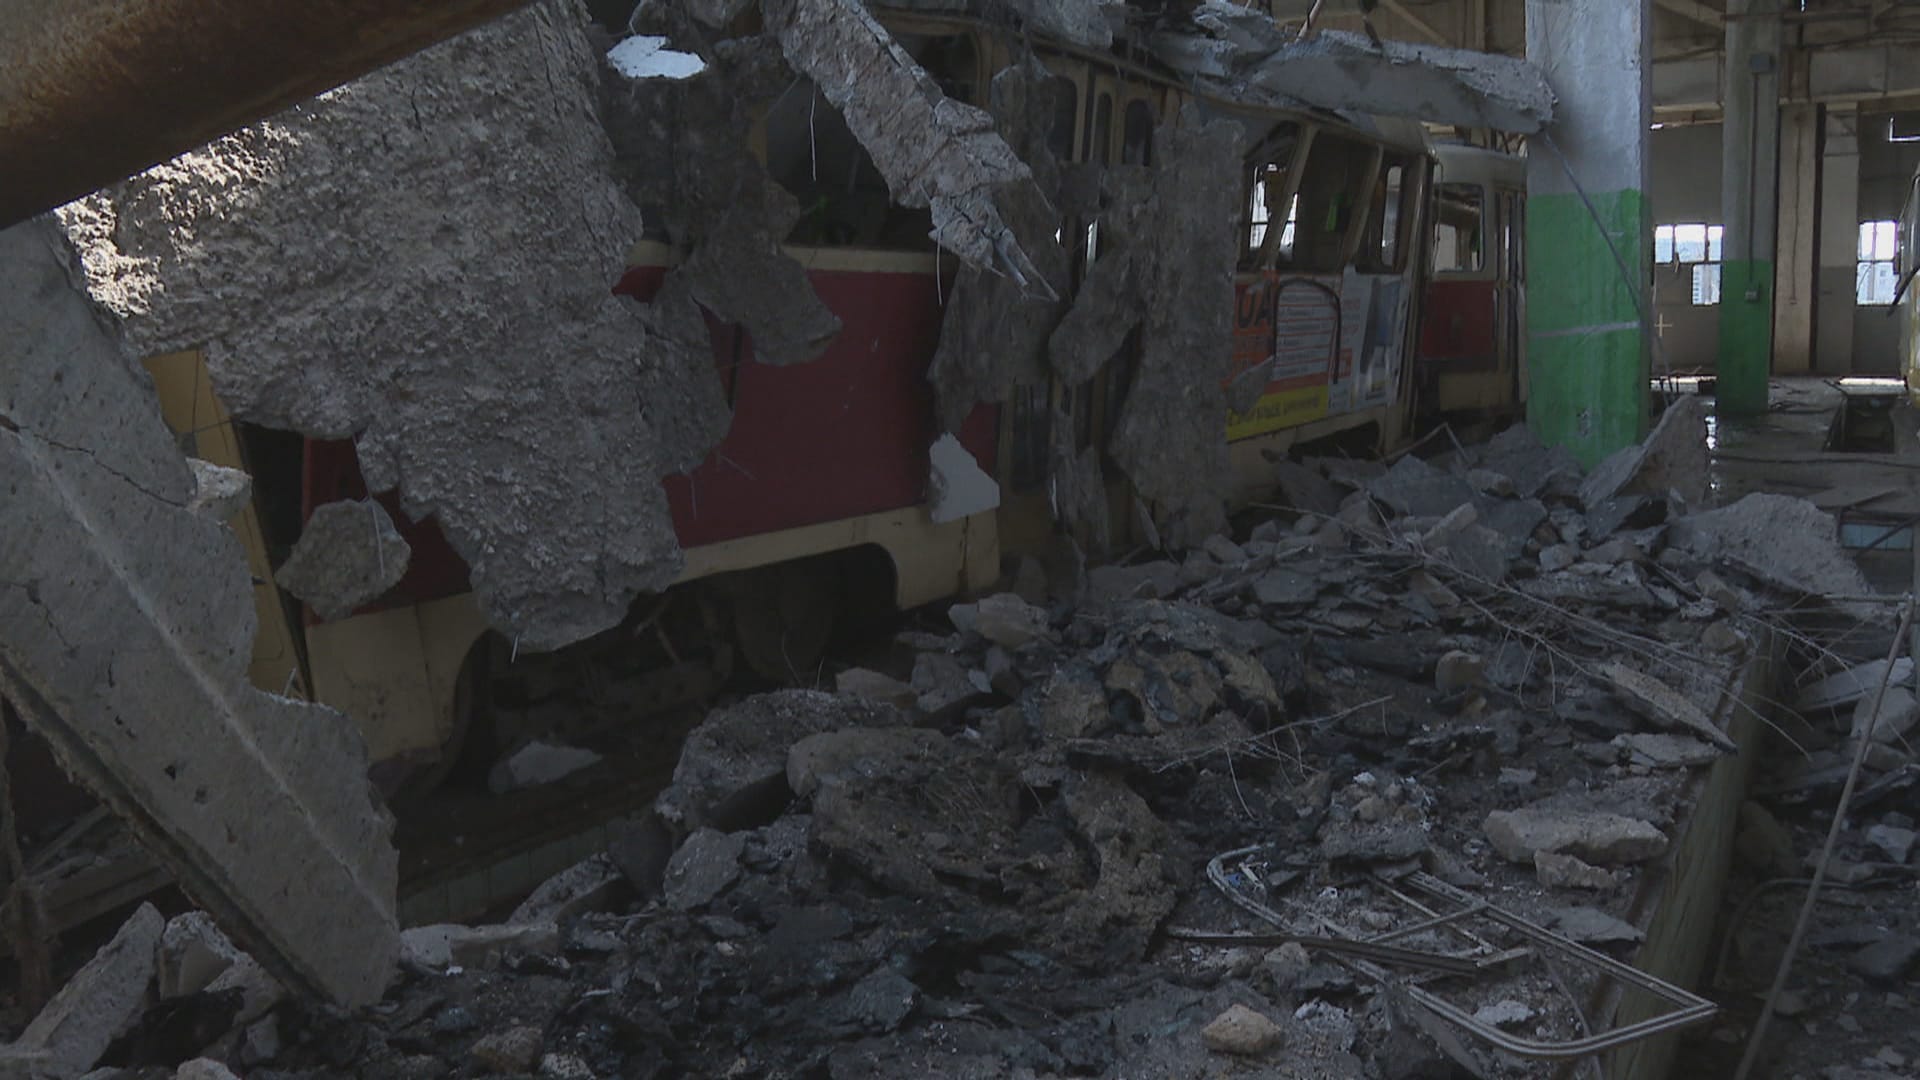 Štáb CNN Prima NEWS natáčel v tramvajovém depu po bombardování. (1. dubna 2022)